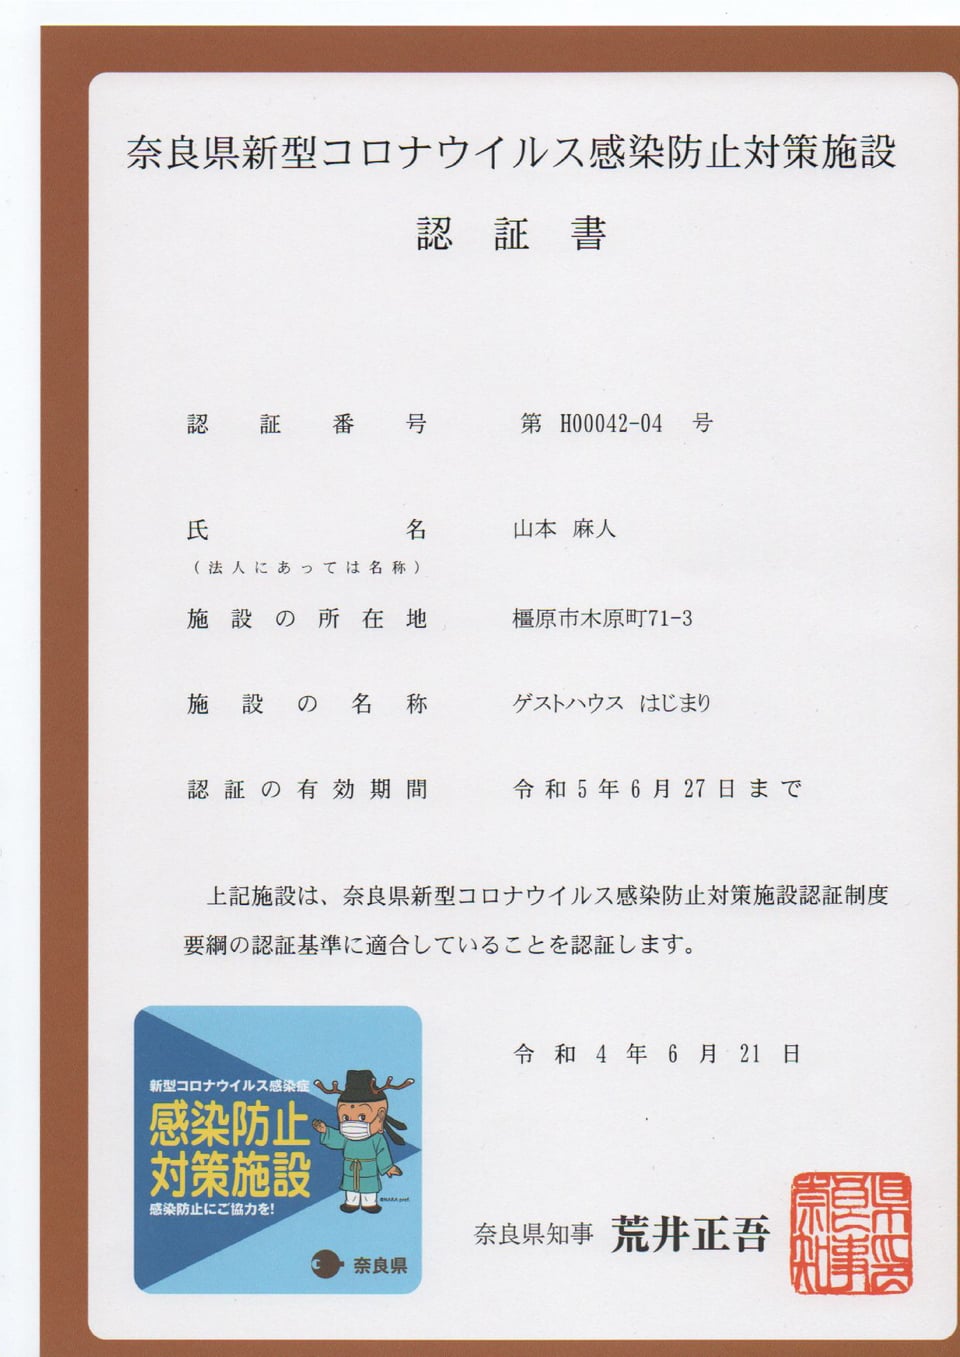 ゲストハウスはじまり・奈良県コロナ対策施設 3つ星認証済